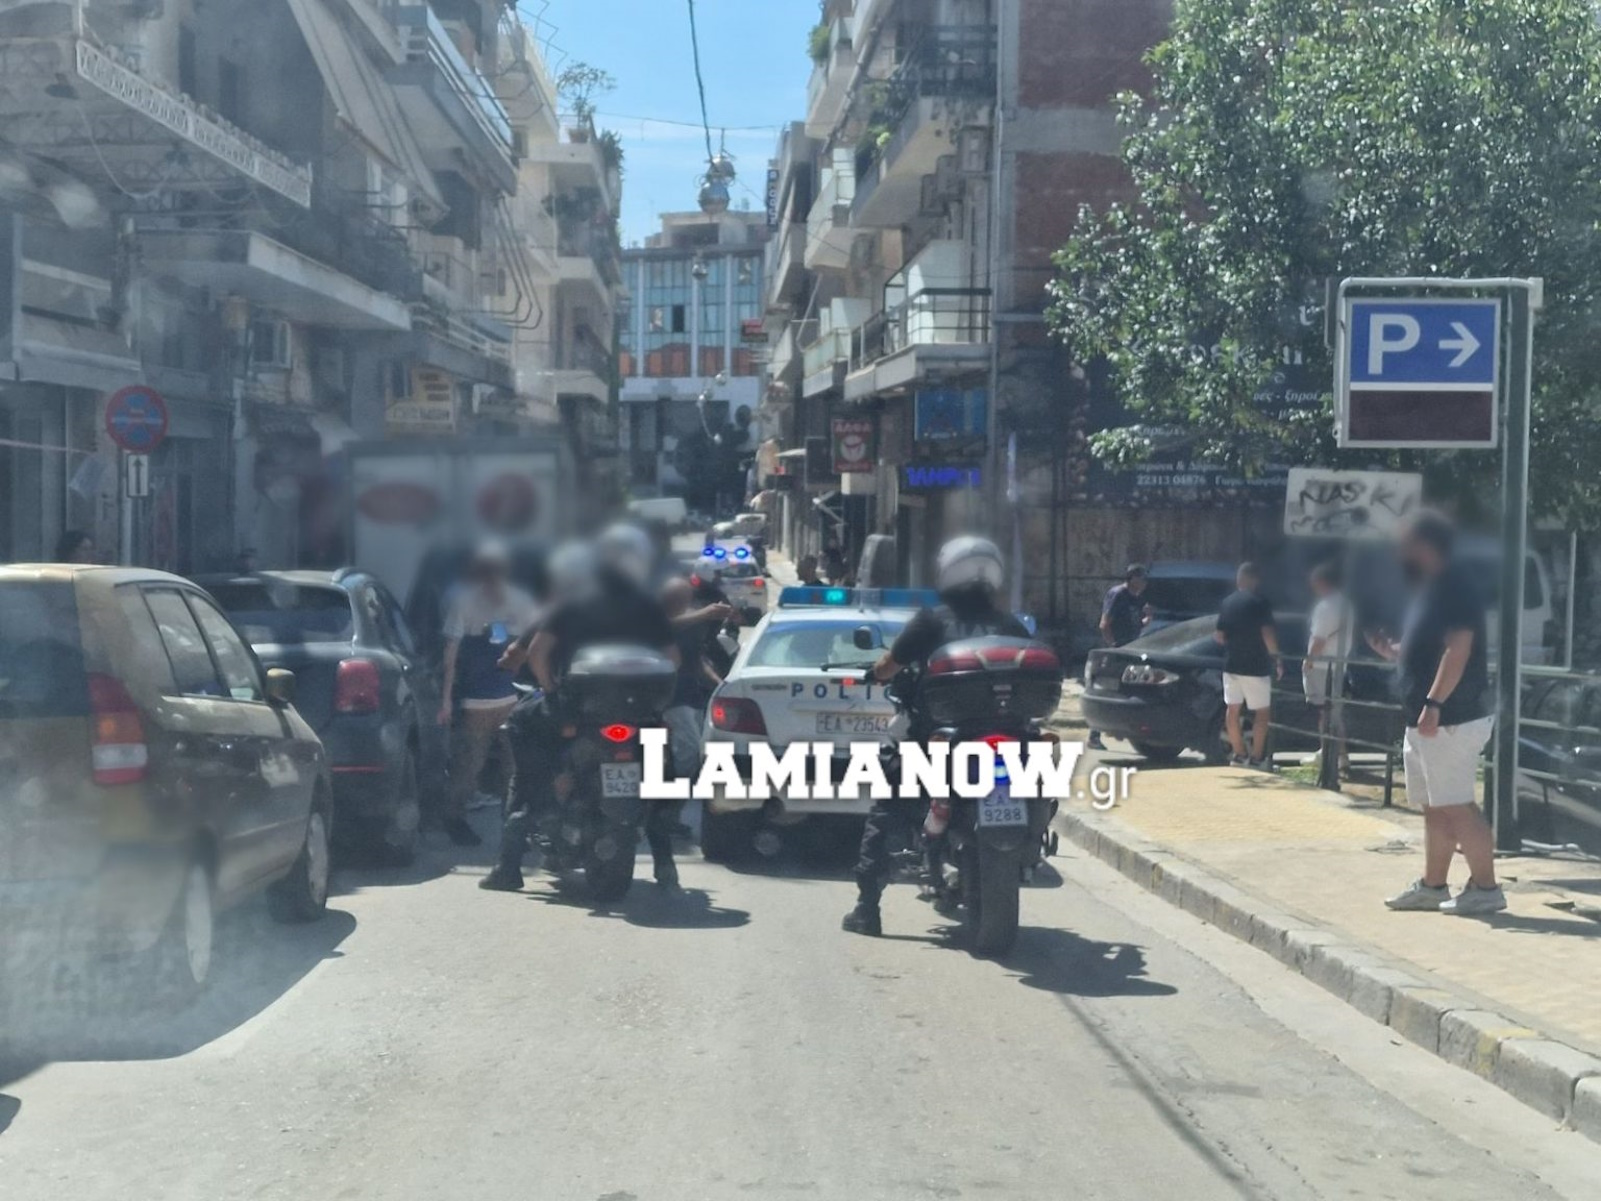 Λαμία: Άγριο ξύλο στο κέντρο της πόλης – Σαράντα νεαροί πλακώθηκαν με λοστάρια και καδρόνια